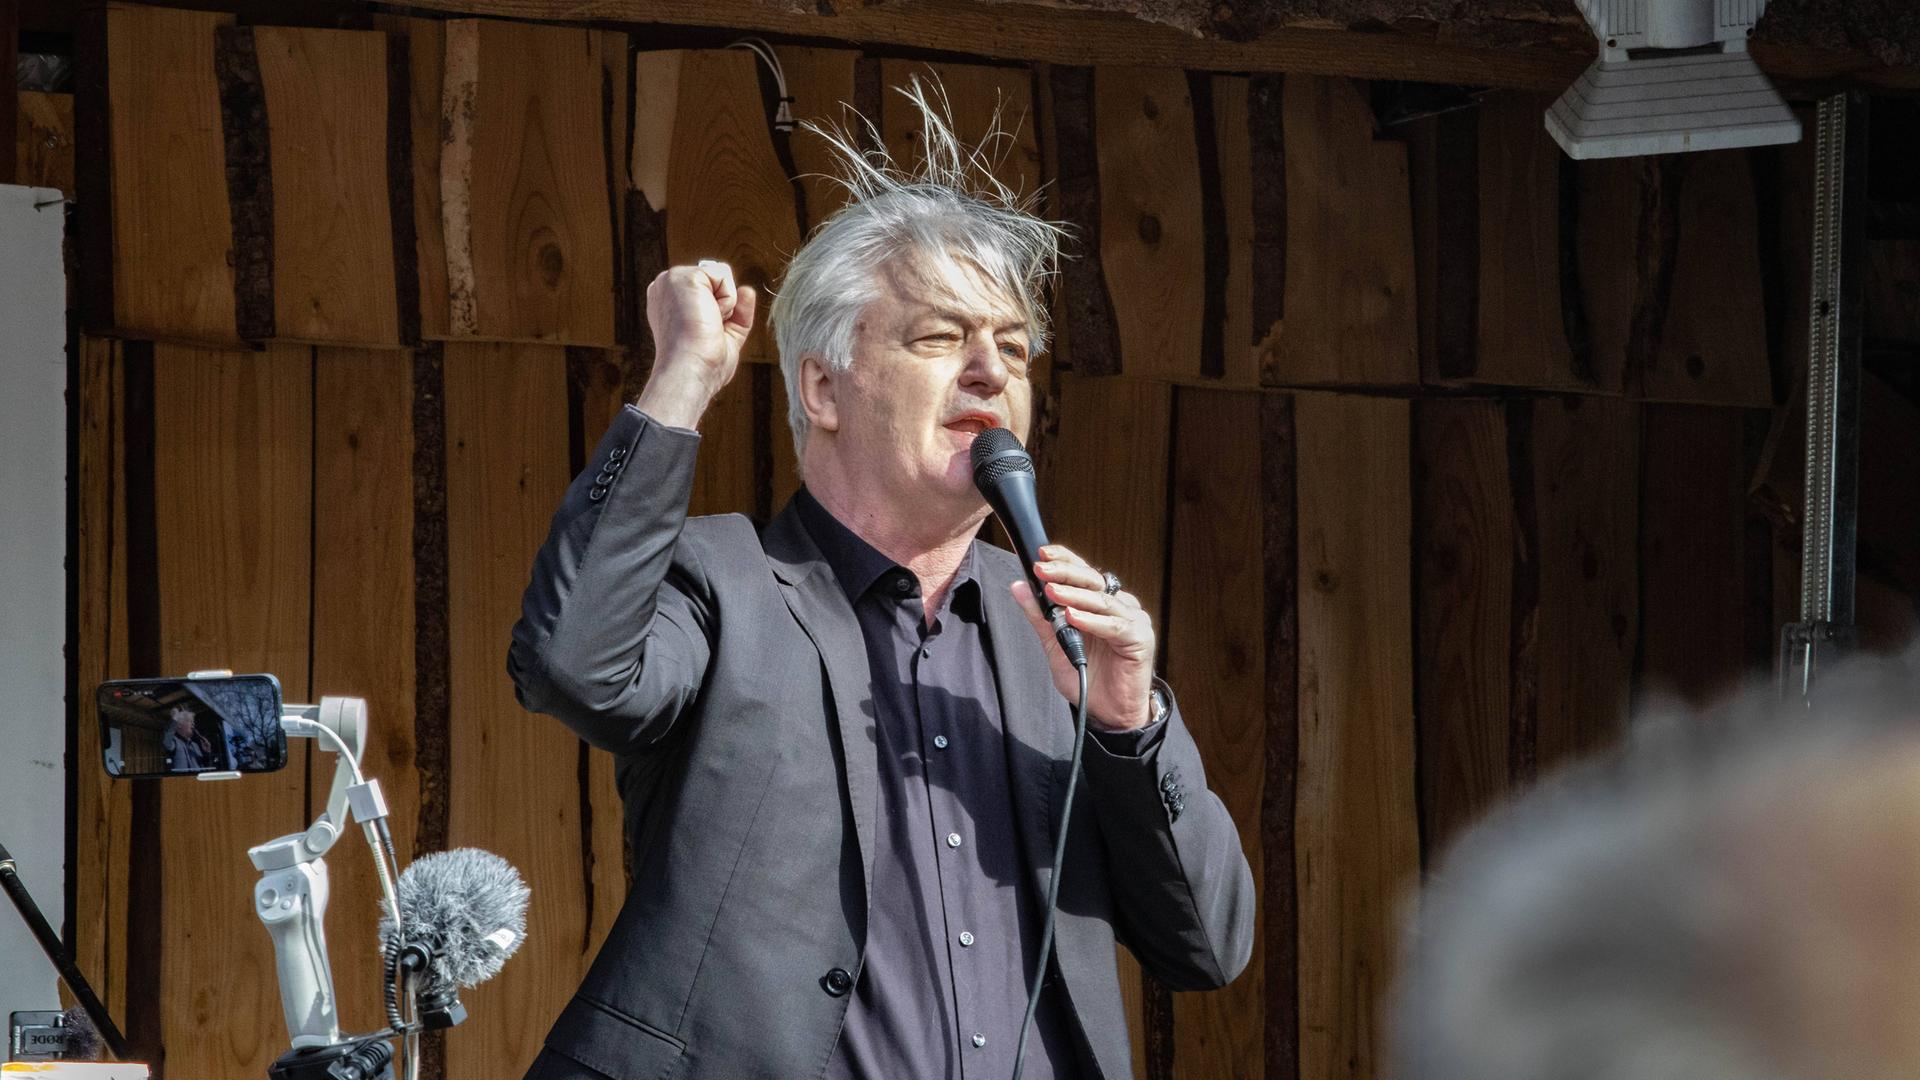 Ein Mann mit wirrem Haar reckt seine rechte Faust in die Luft. Er spricht in eine Mikrofon und steht offenbar auf einer Bühne.